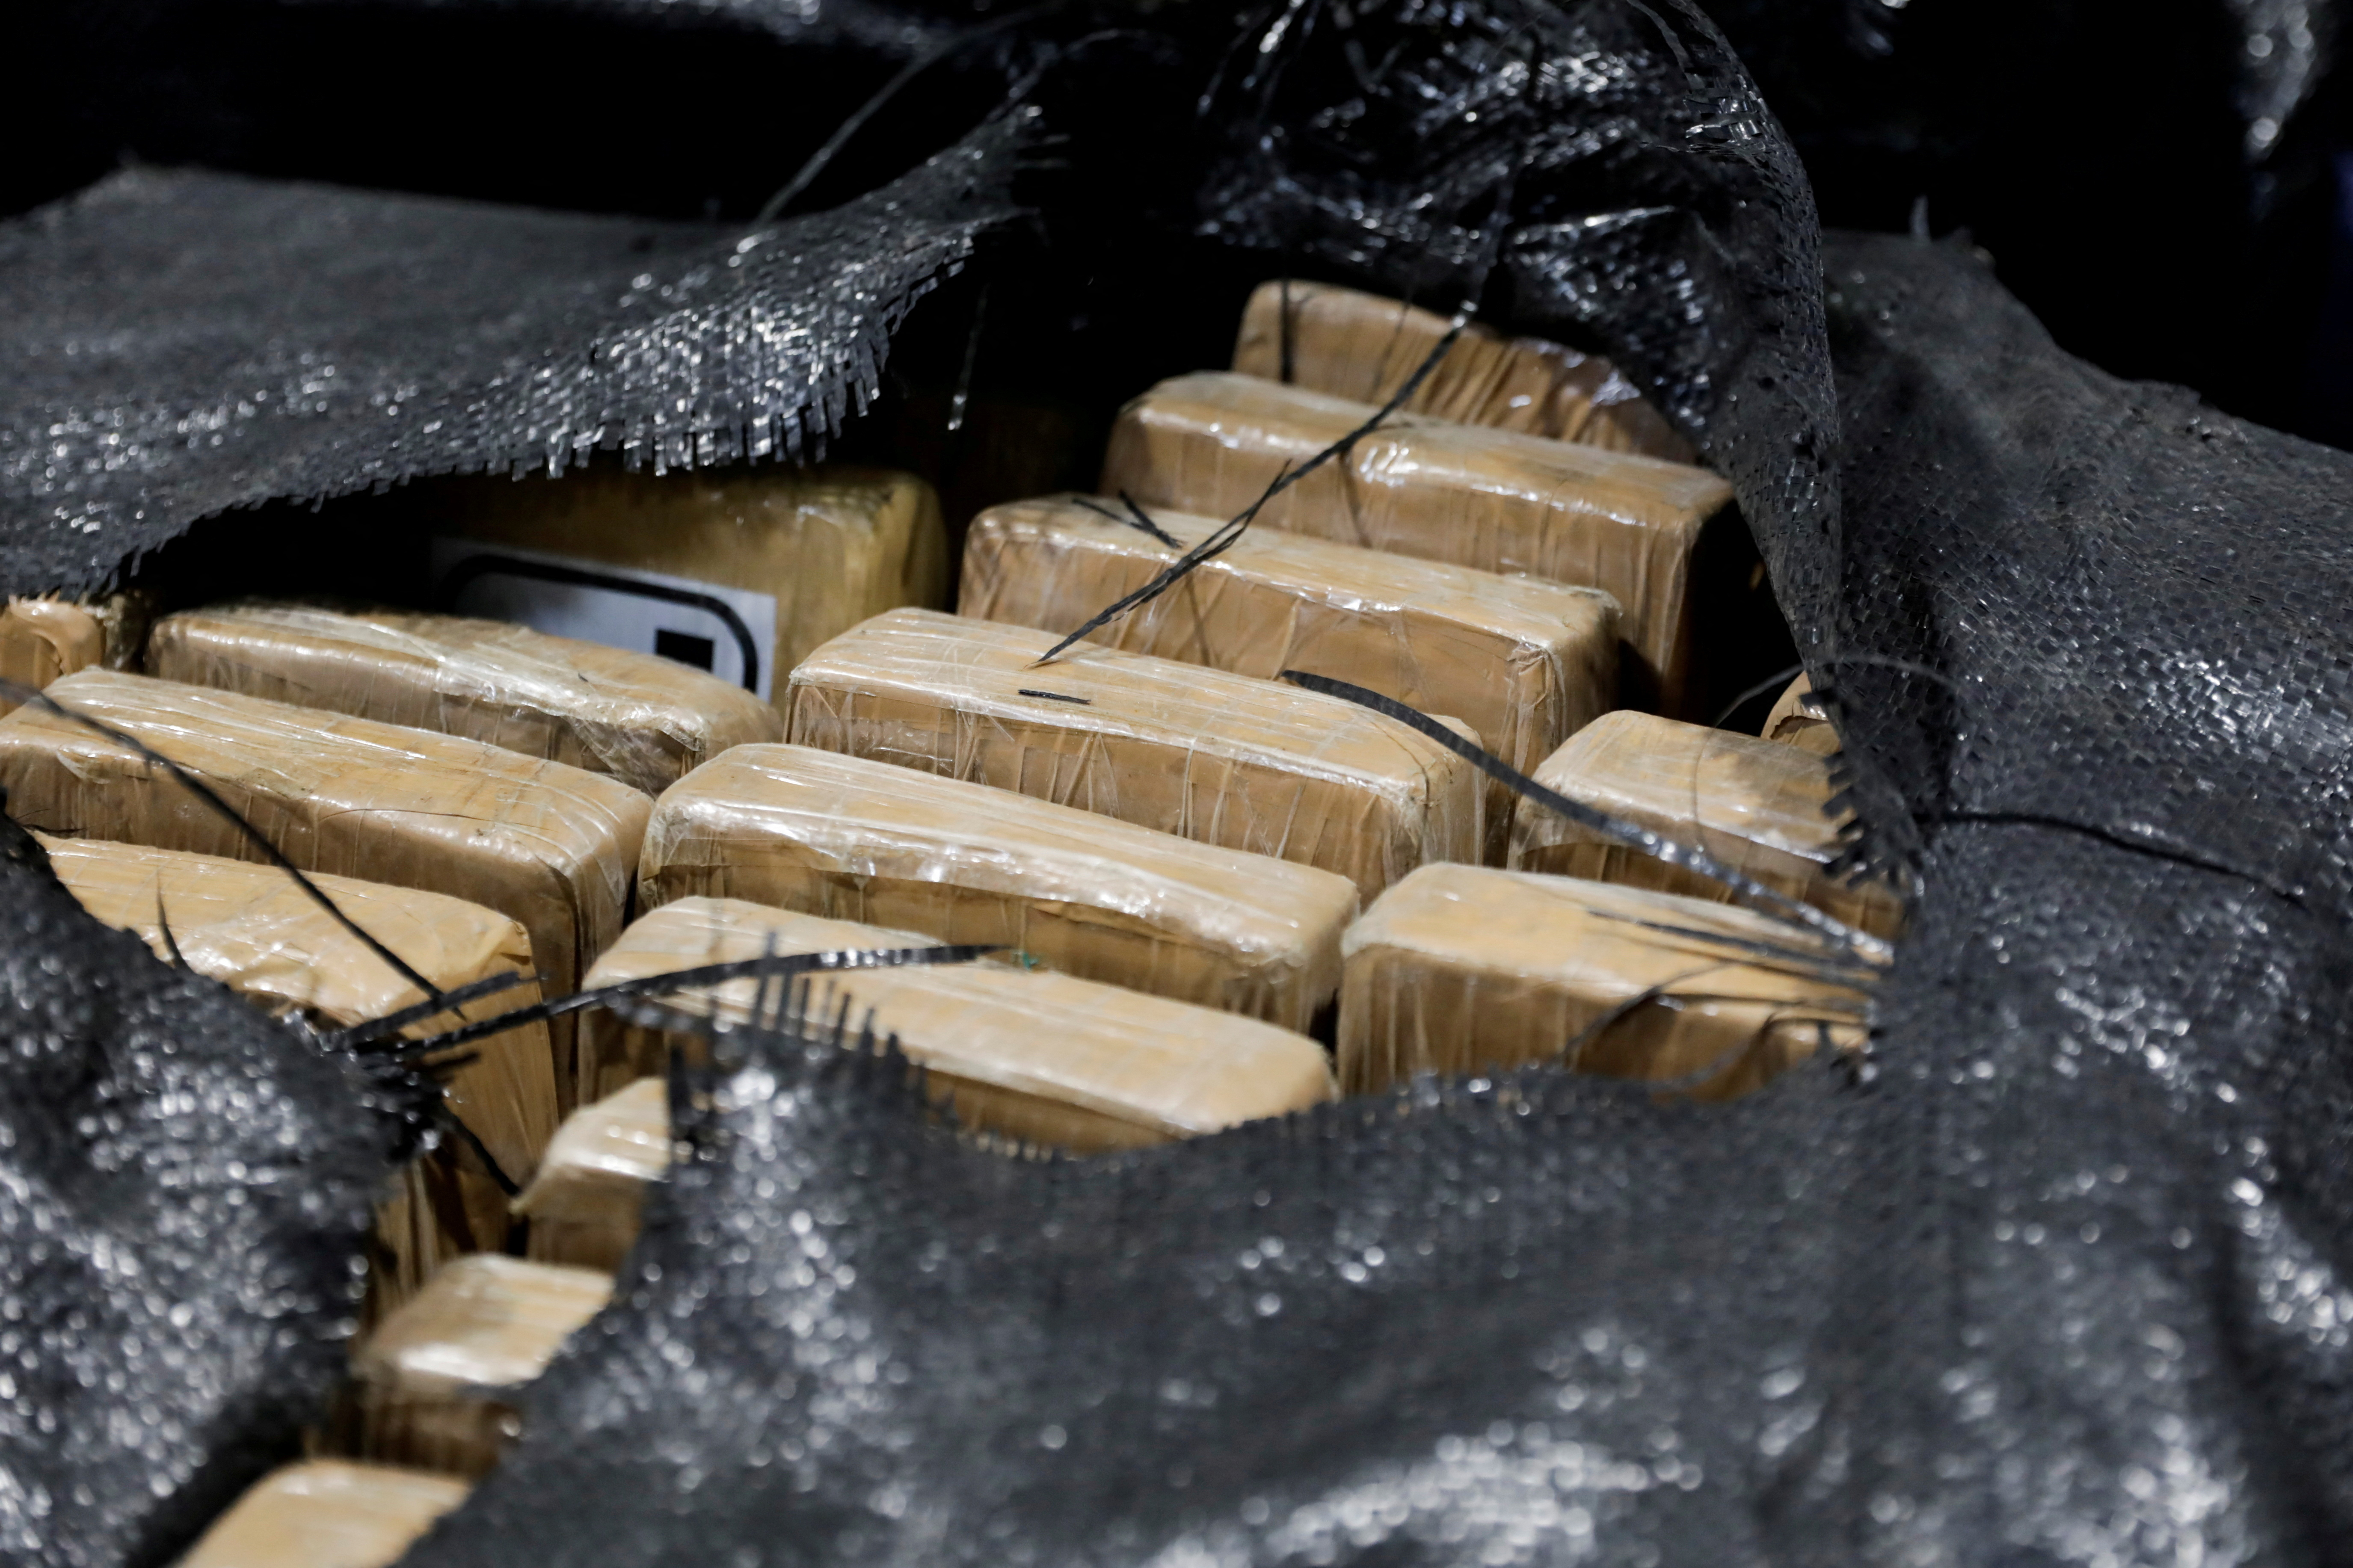 Gran parte de la población de Amberes es consumidora de cocaína, lo que ha derivado en un problema de salud pública (Foto: REUTERS/Karen Toro)